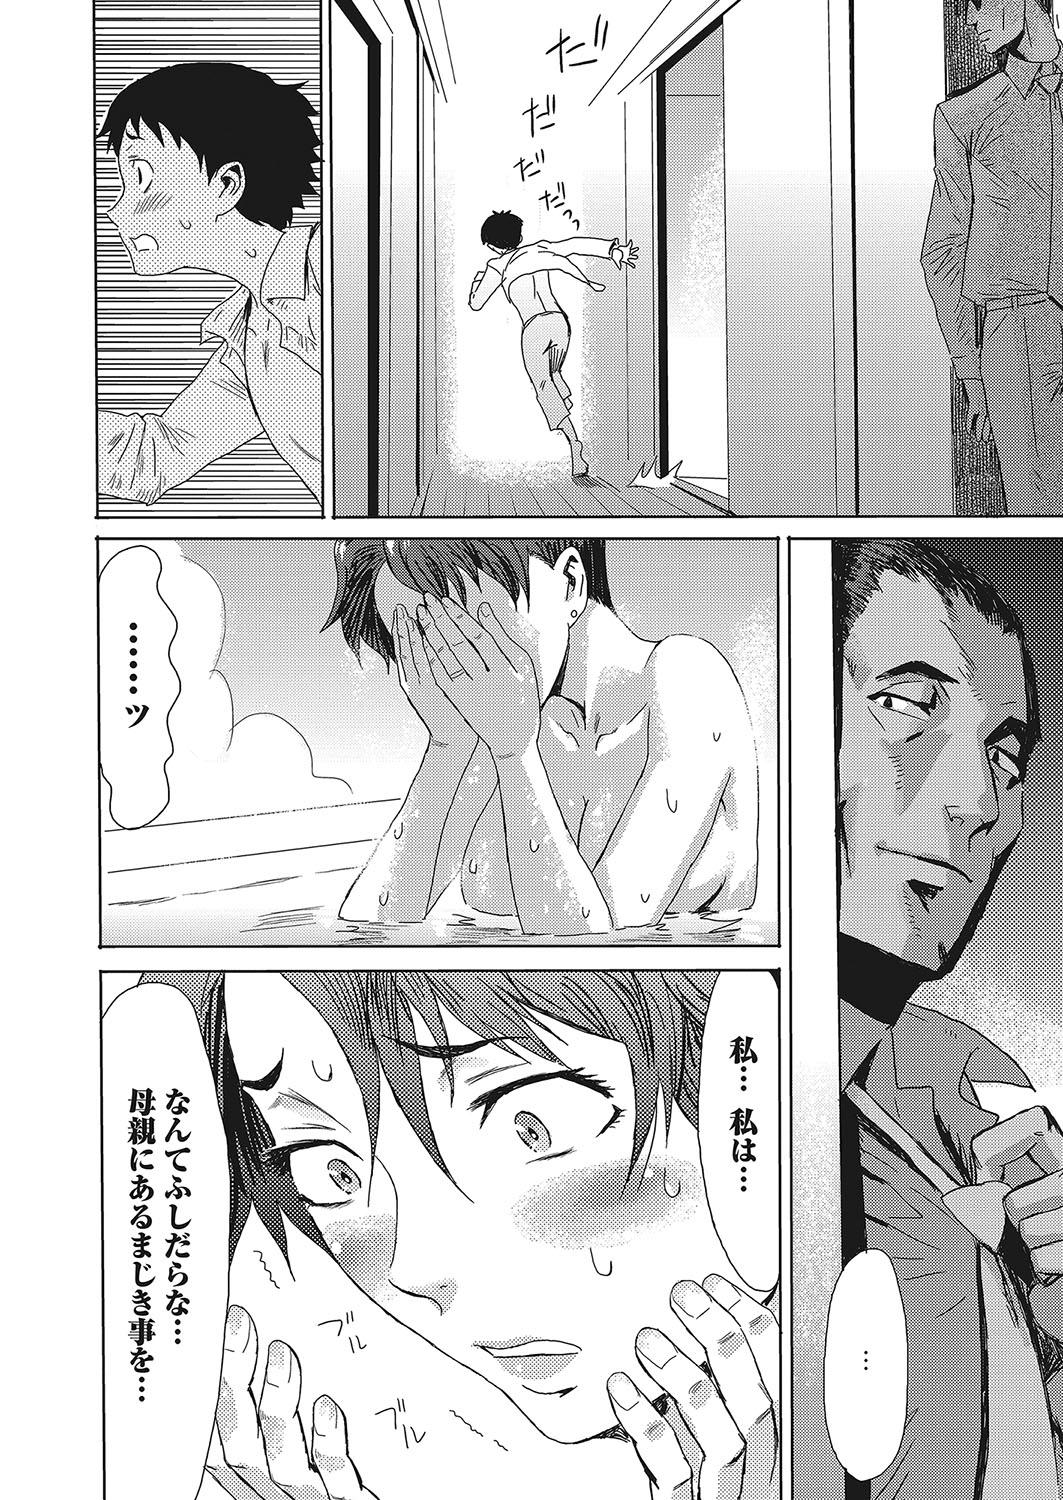 Ikillitts Web Manga Bangaichi Vol. 12 Ftvgirls - Page 9